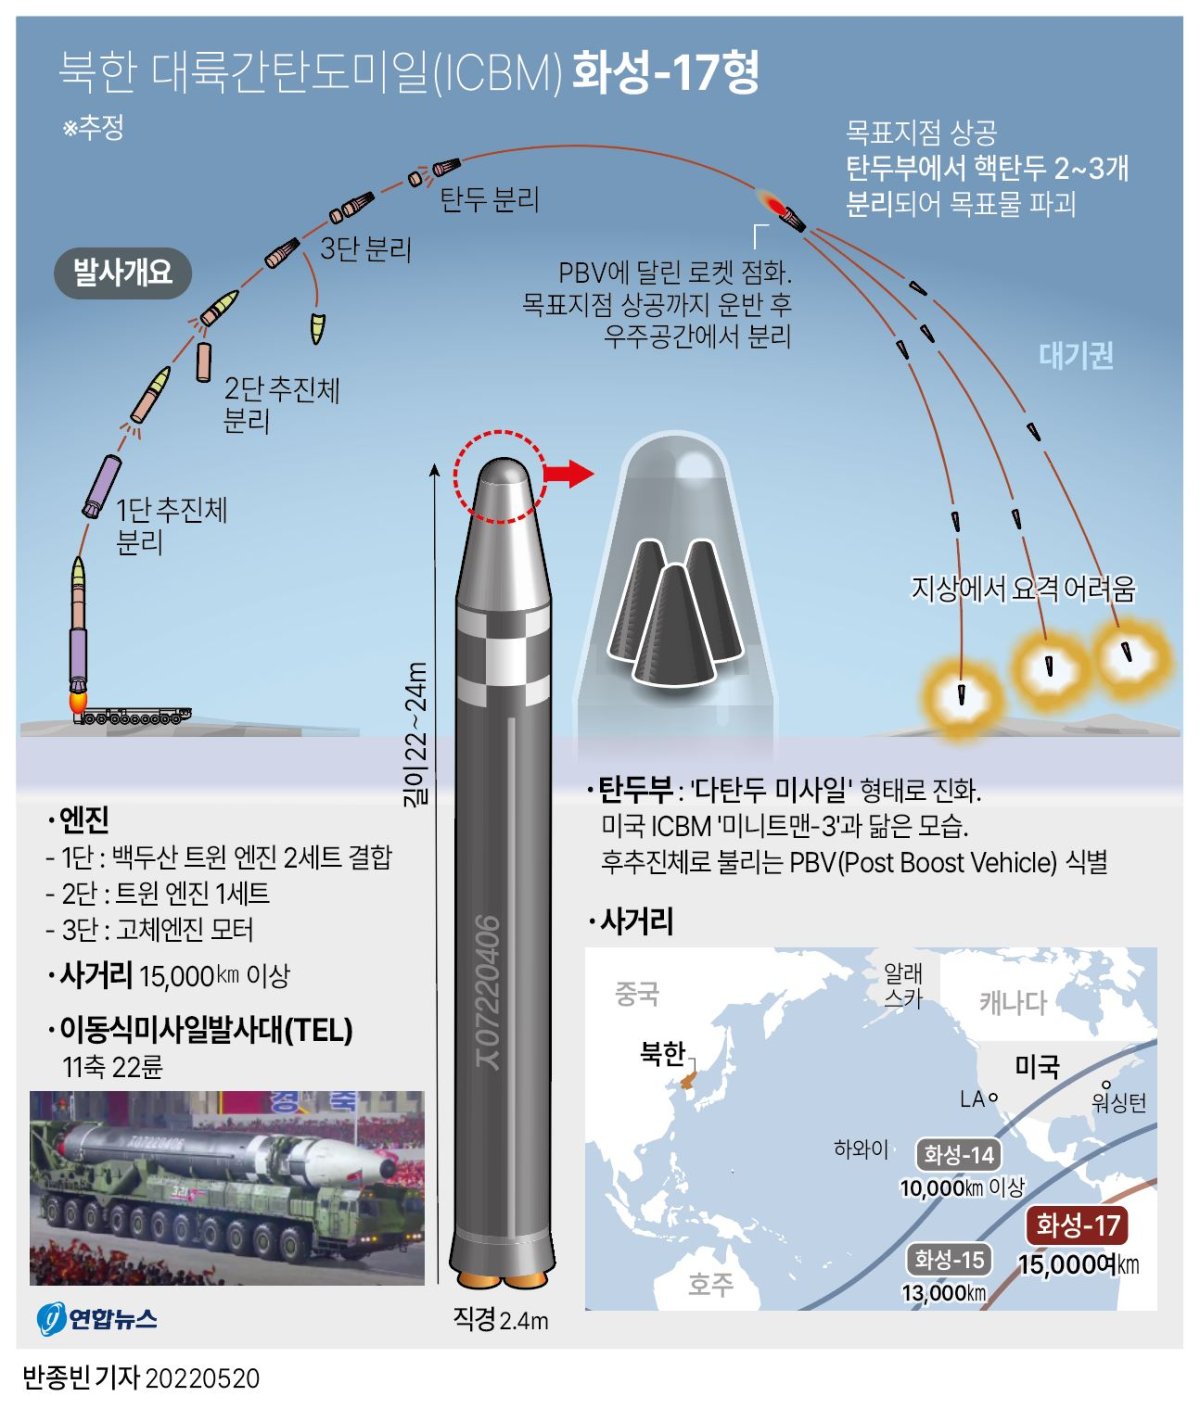 [그래픽] 북한 ICBM '화성-17형'